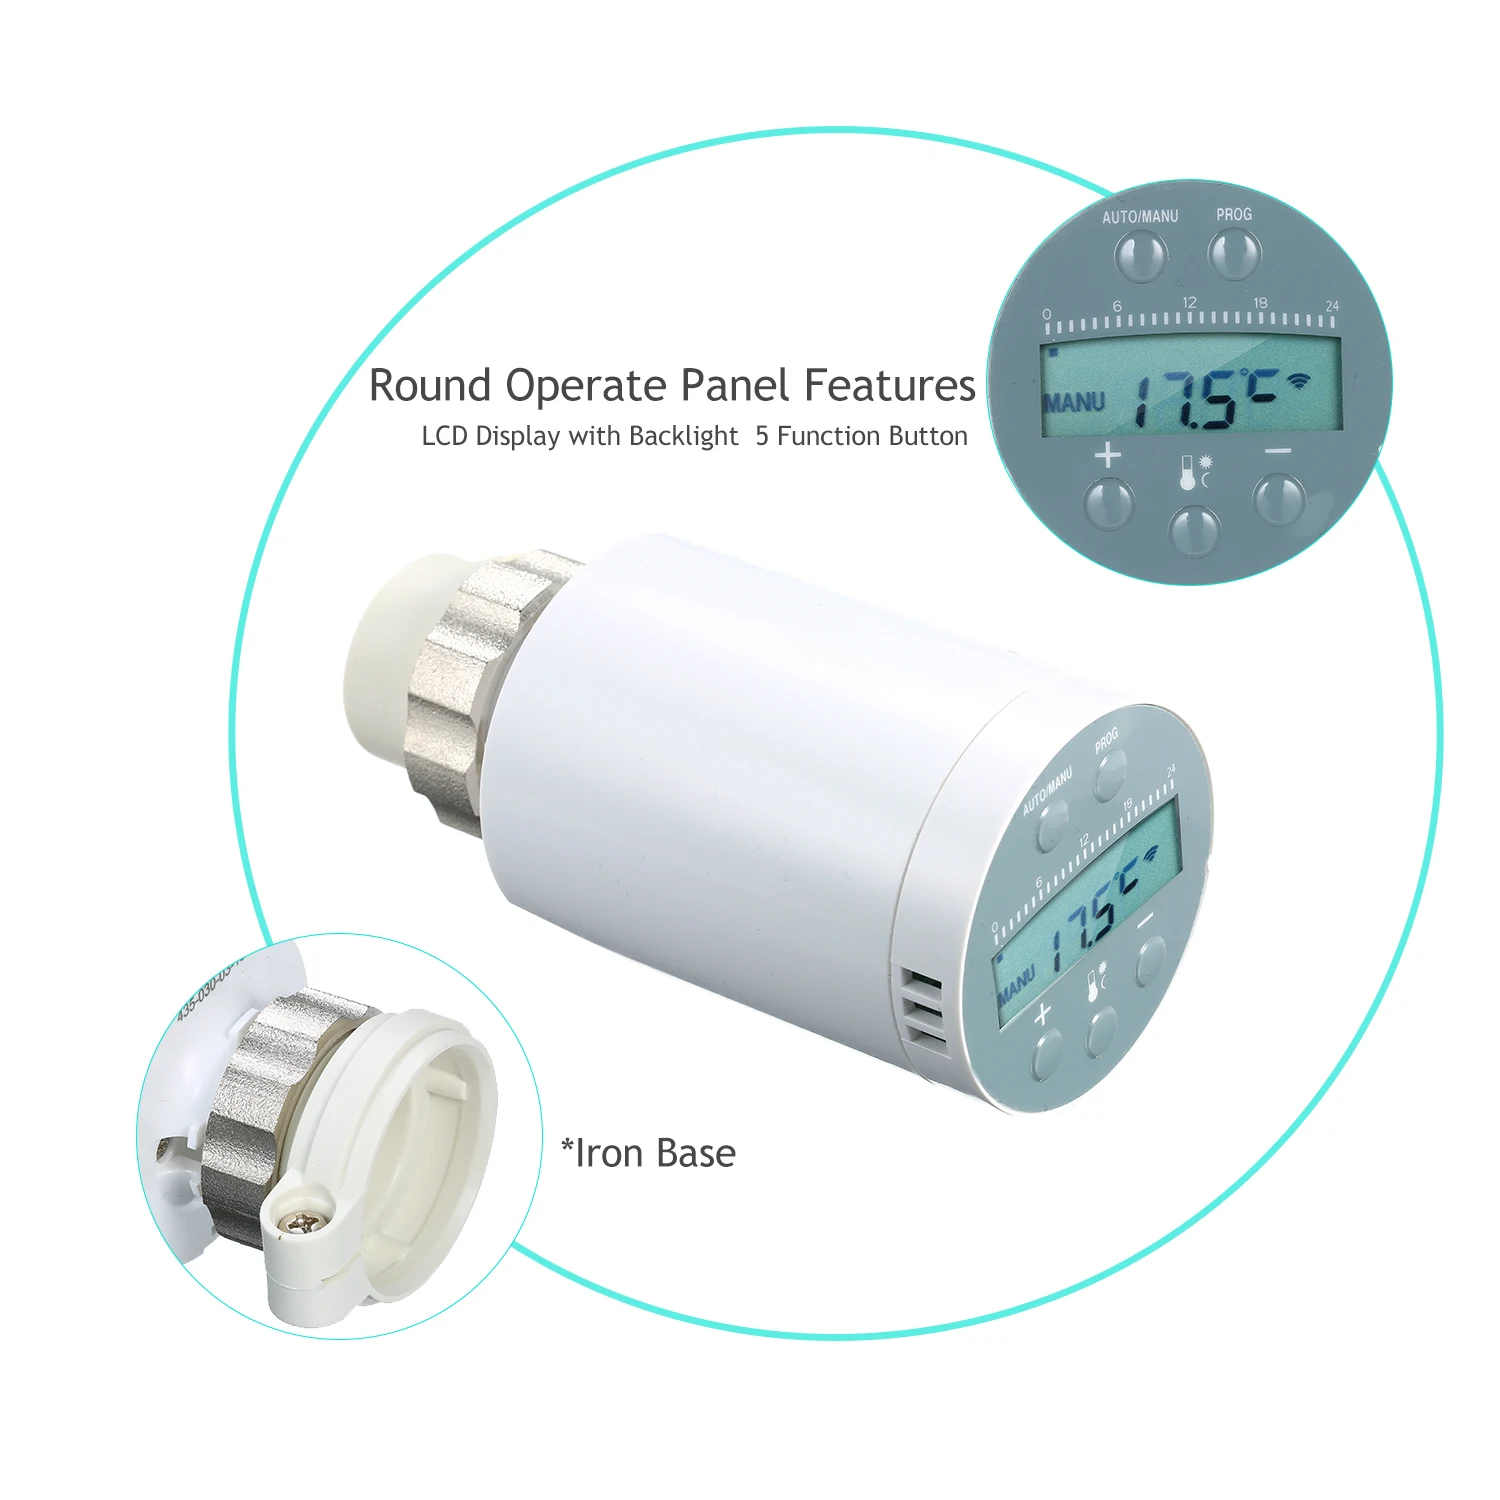 SEA801-APP TRV термостат регулятор температуры нагрева и точный термостатический клапан радиатора программируемый голосовой контроллер